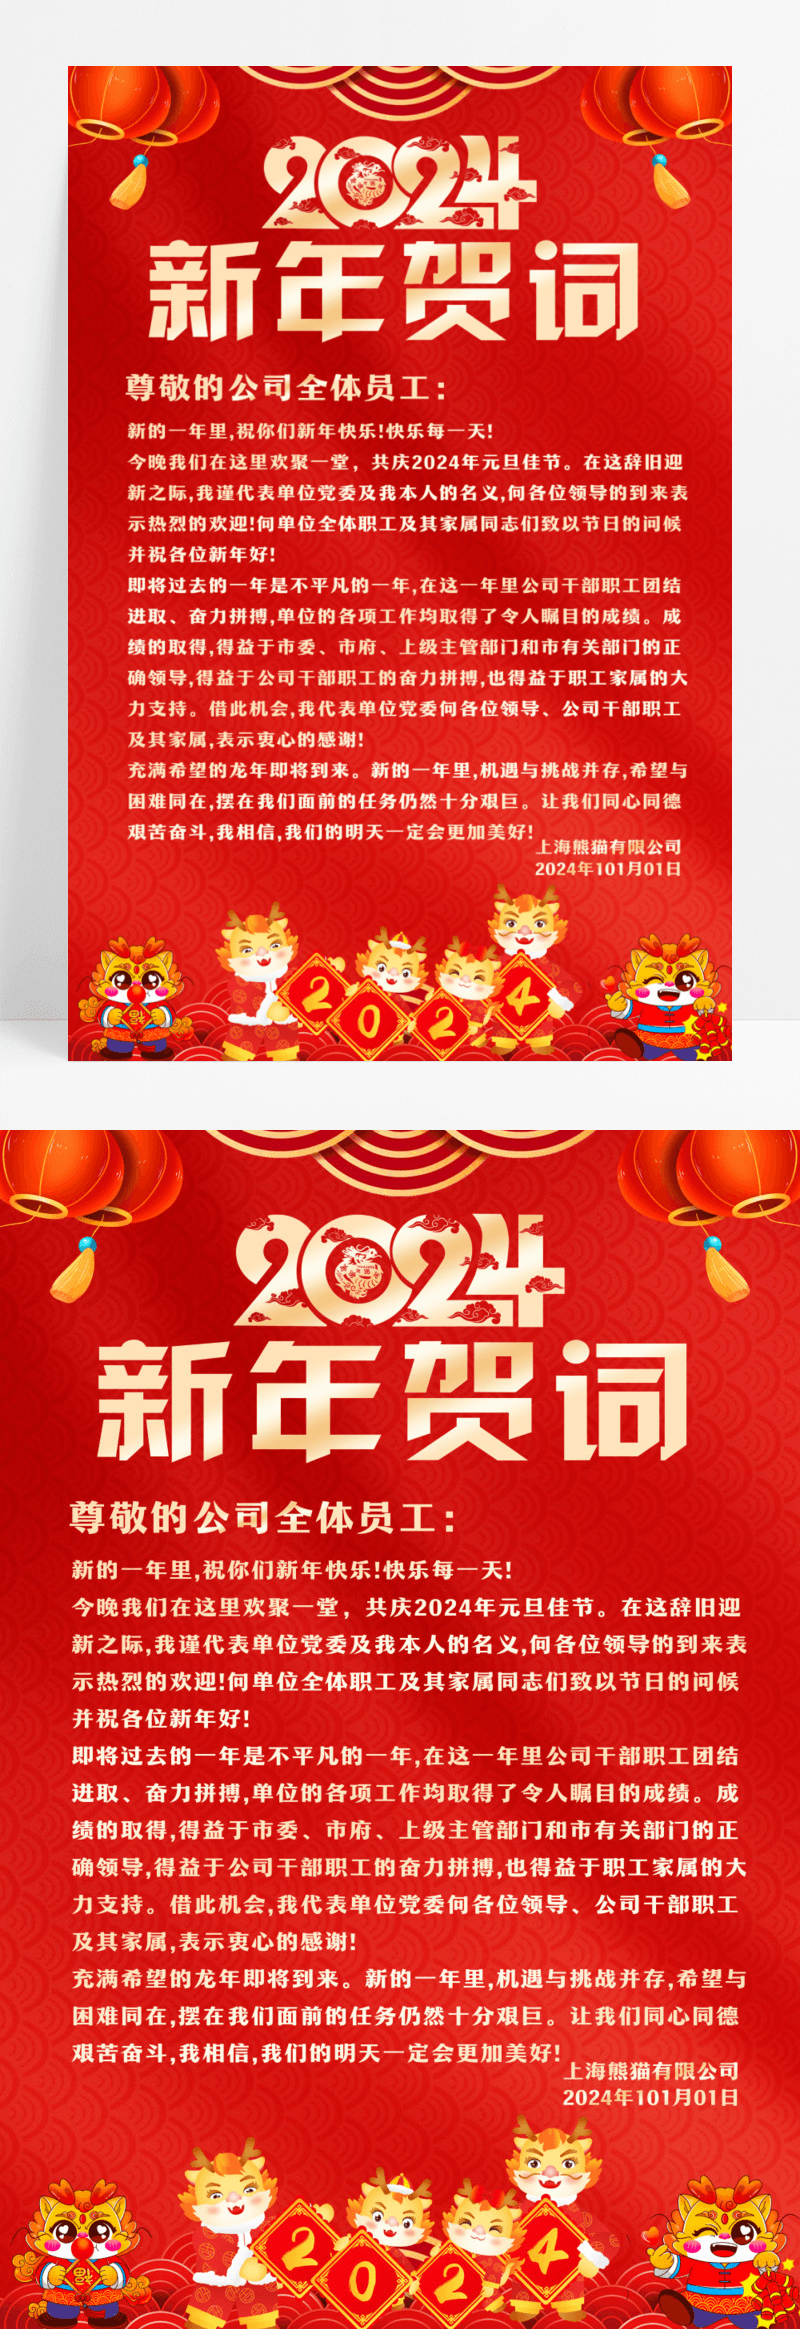 红色大气2024龙年新年贺词宣传海报设计